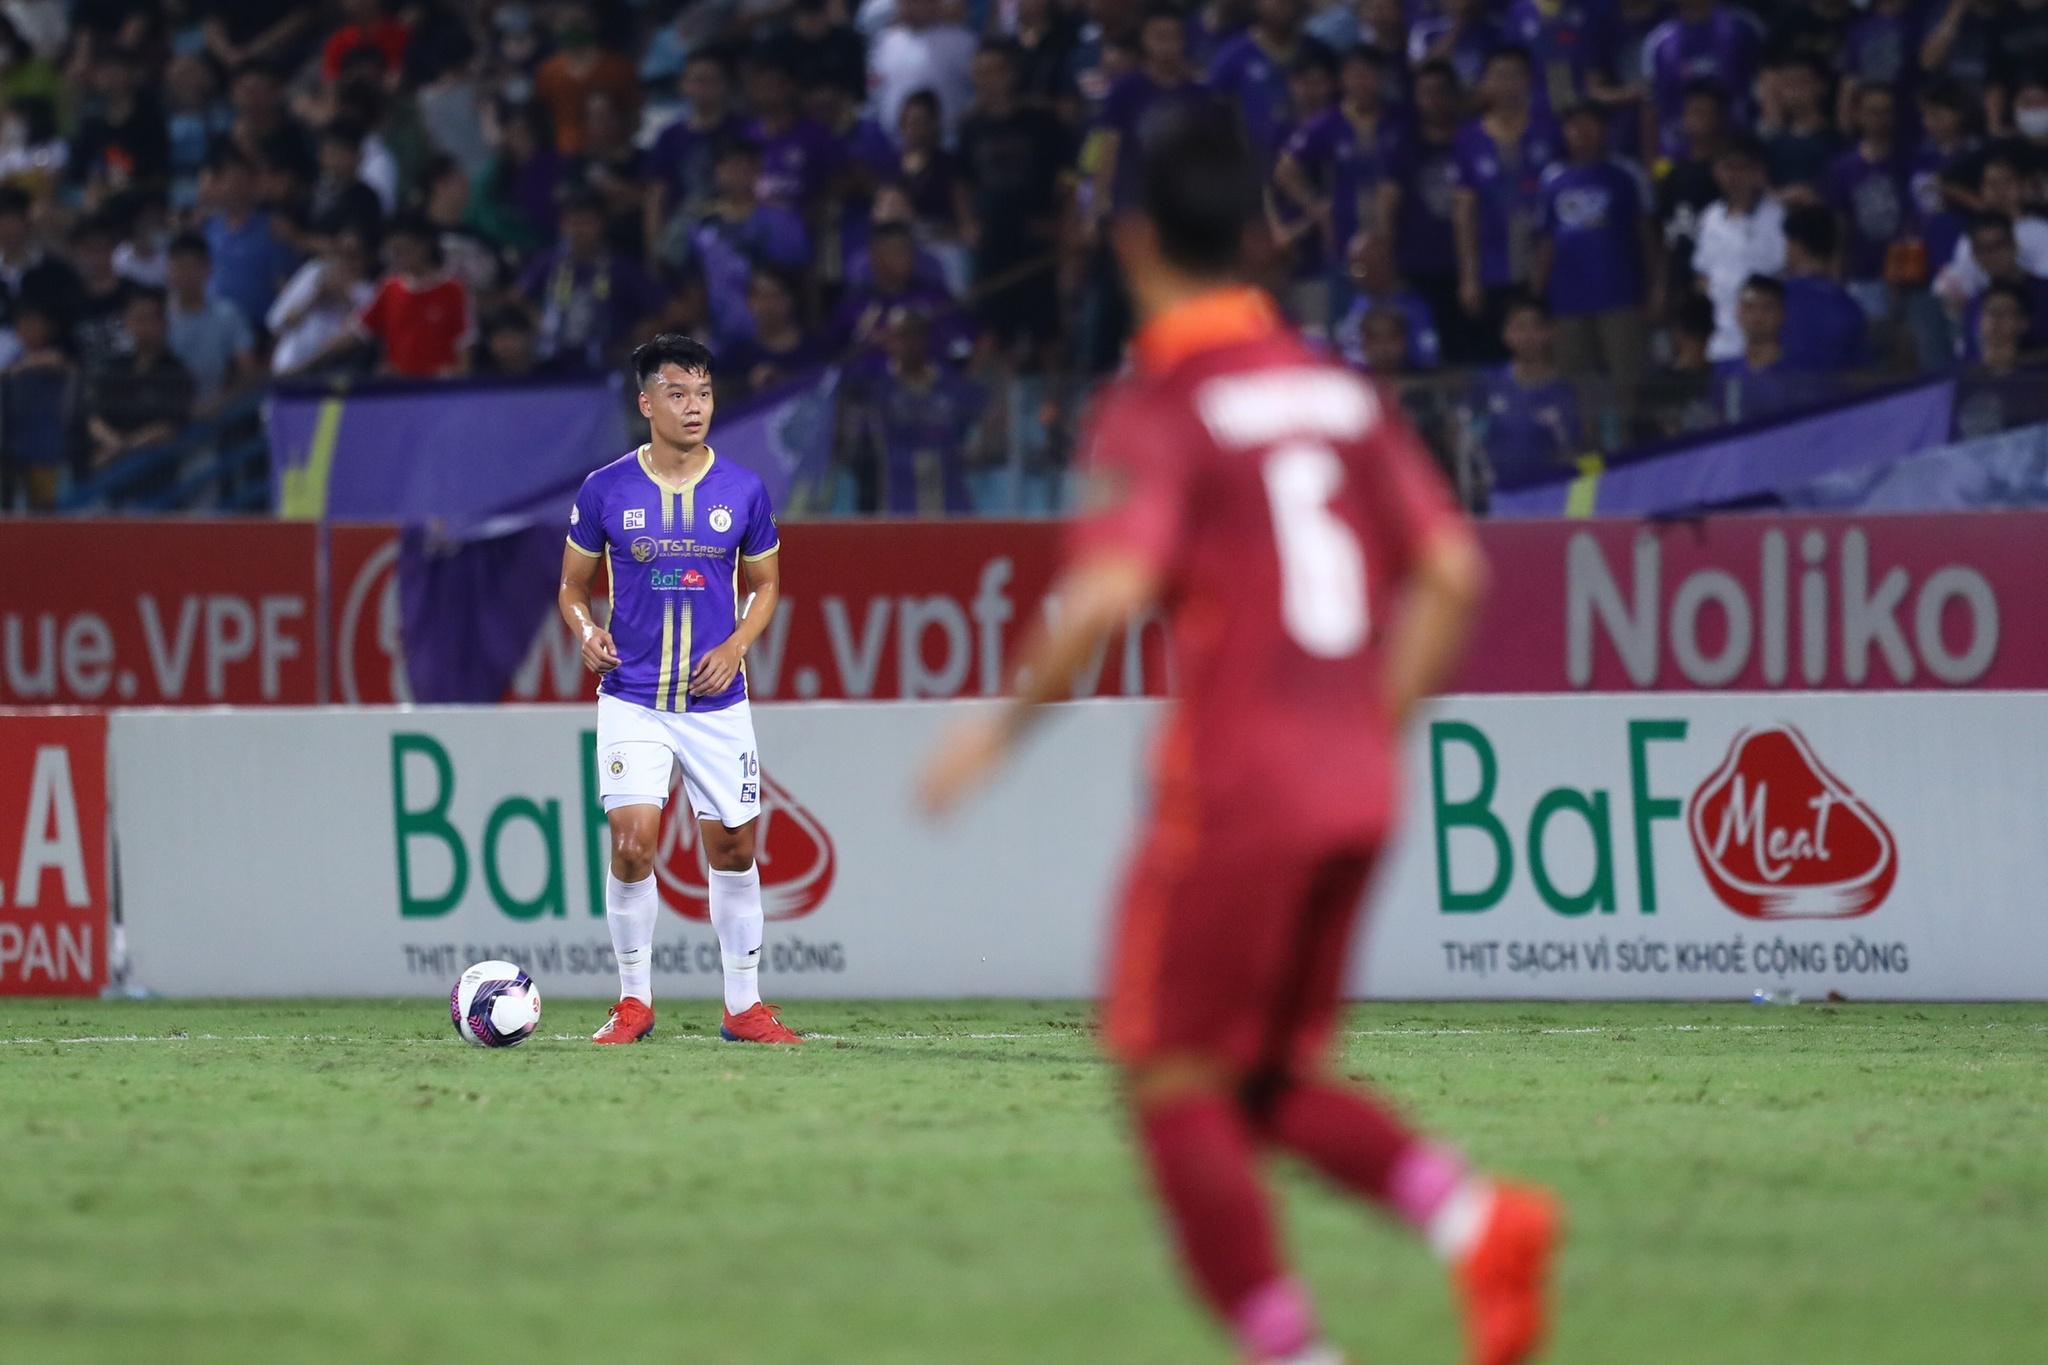 Kết quả Hà Nội FC 0-3 CLB Bình Định: Rafaelson lập hat-trick, Duy Mạnh nhận thẻ đỏ - ảnh 3